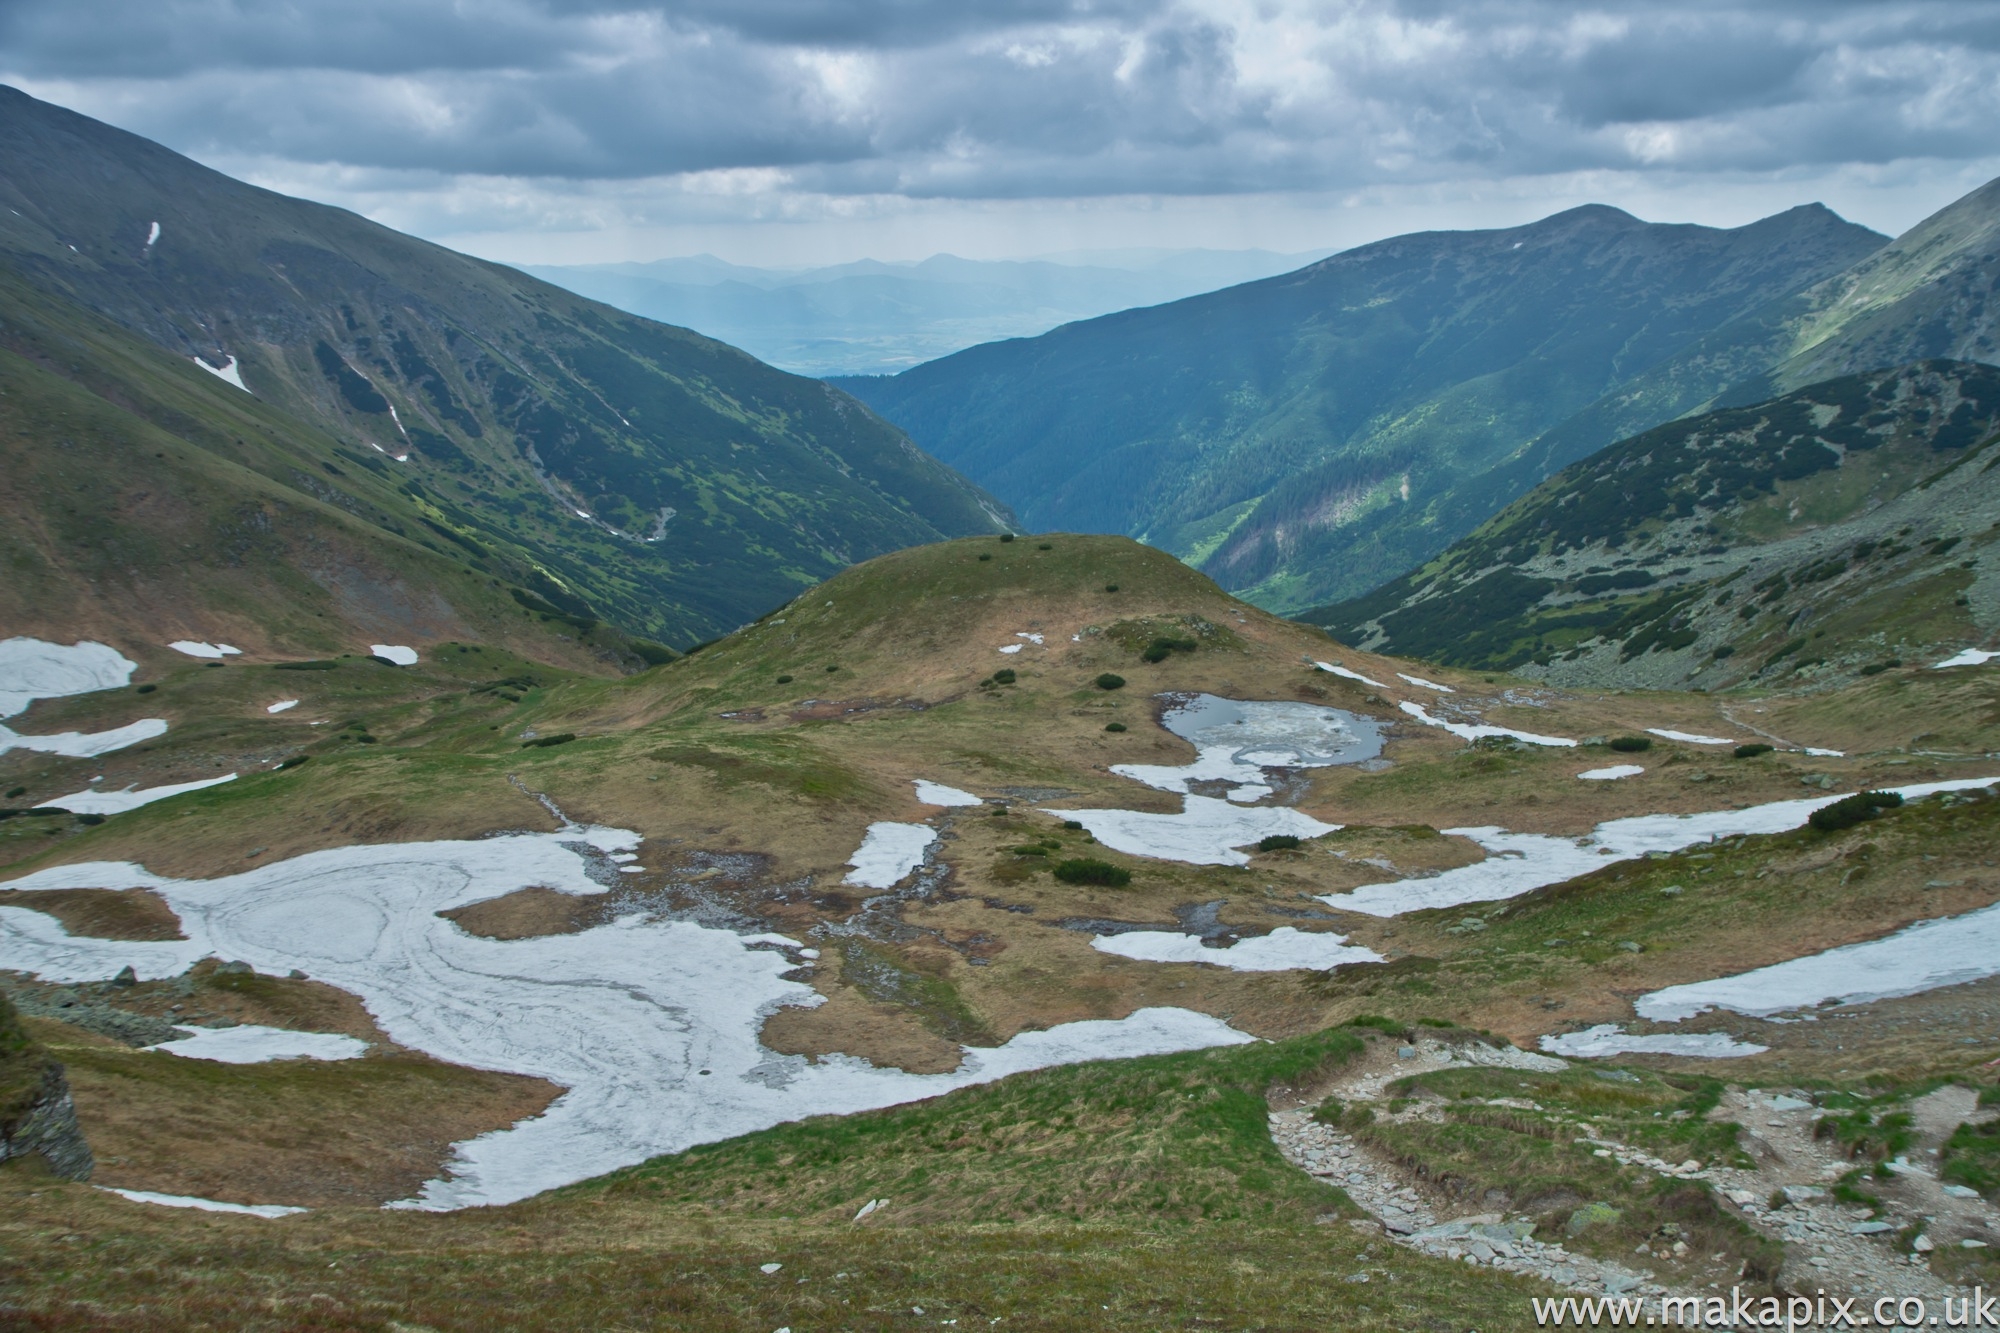 Žiarske sedloWest Tatras, Slovakia 2014